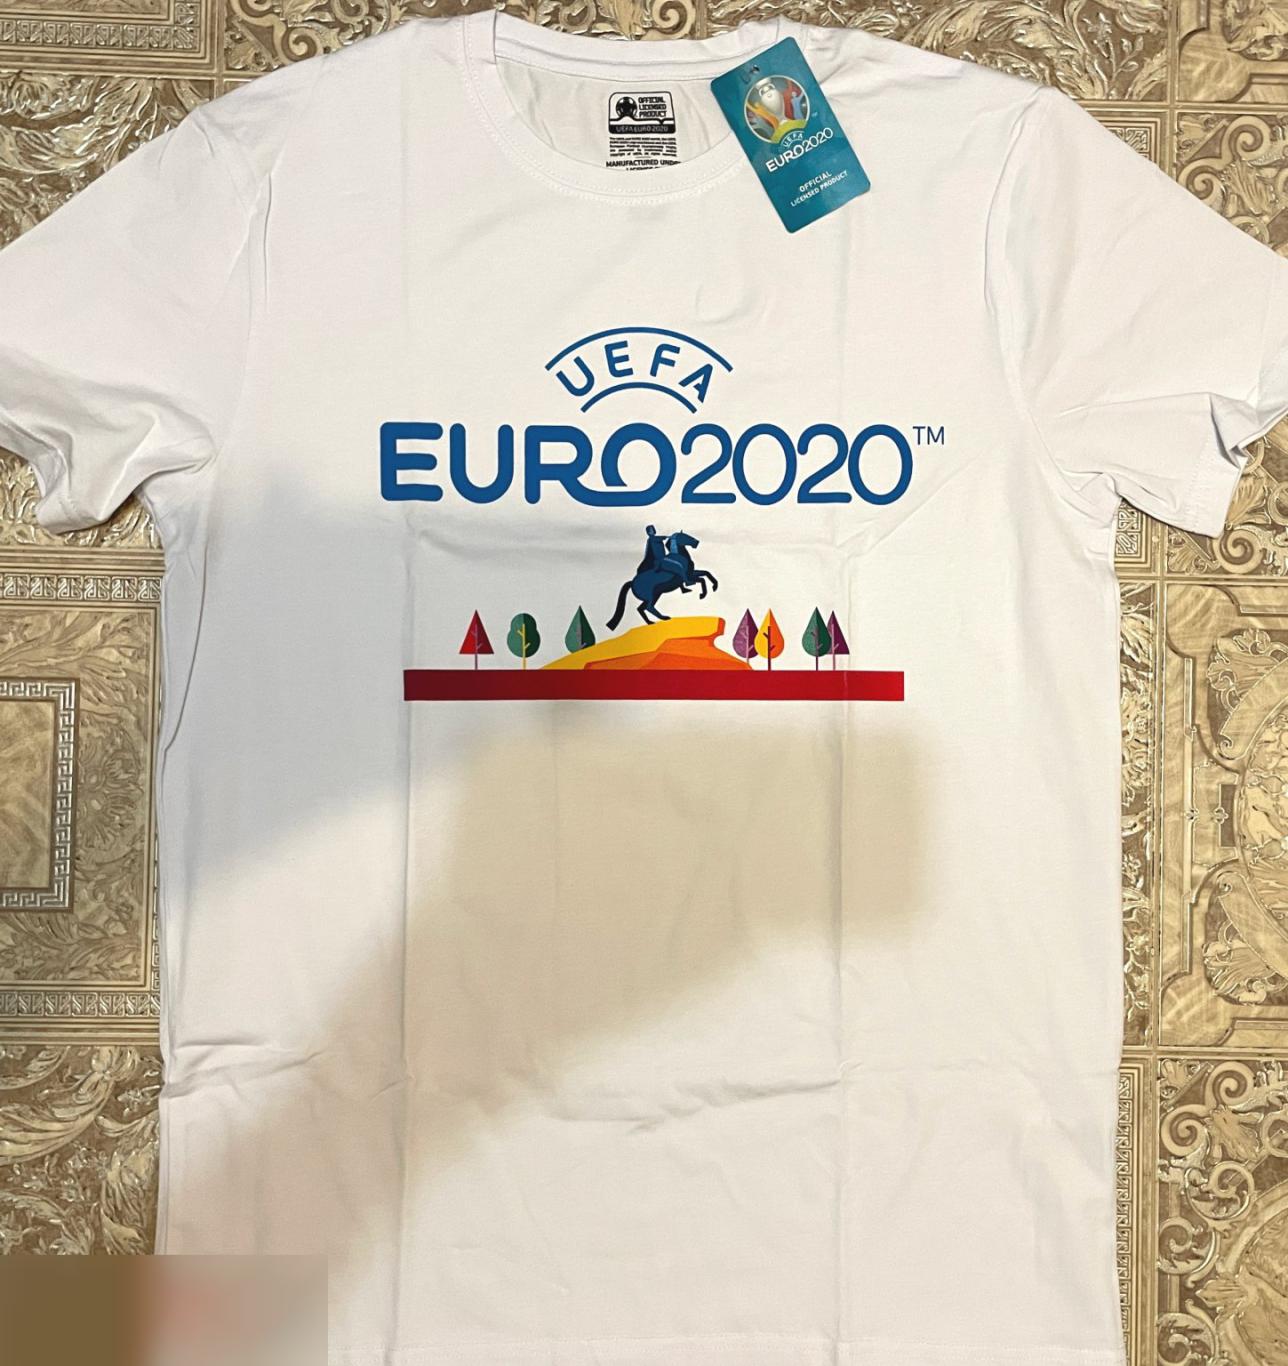 ОПТОВЫЙ ЛОТ! 100 мужских футболок ЕВРО 2020 (S, M). 1